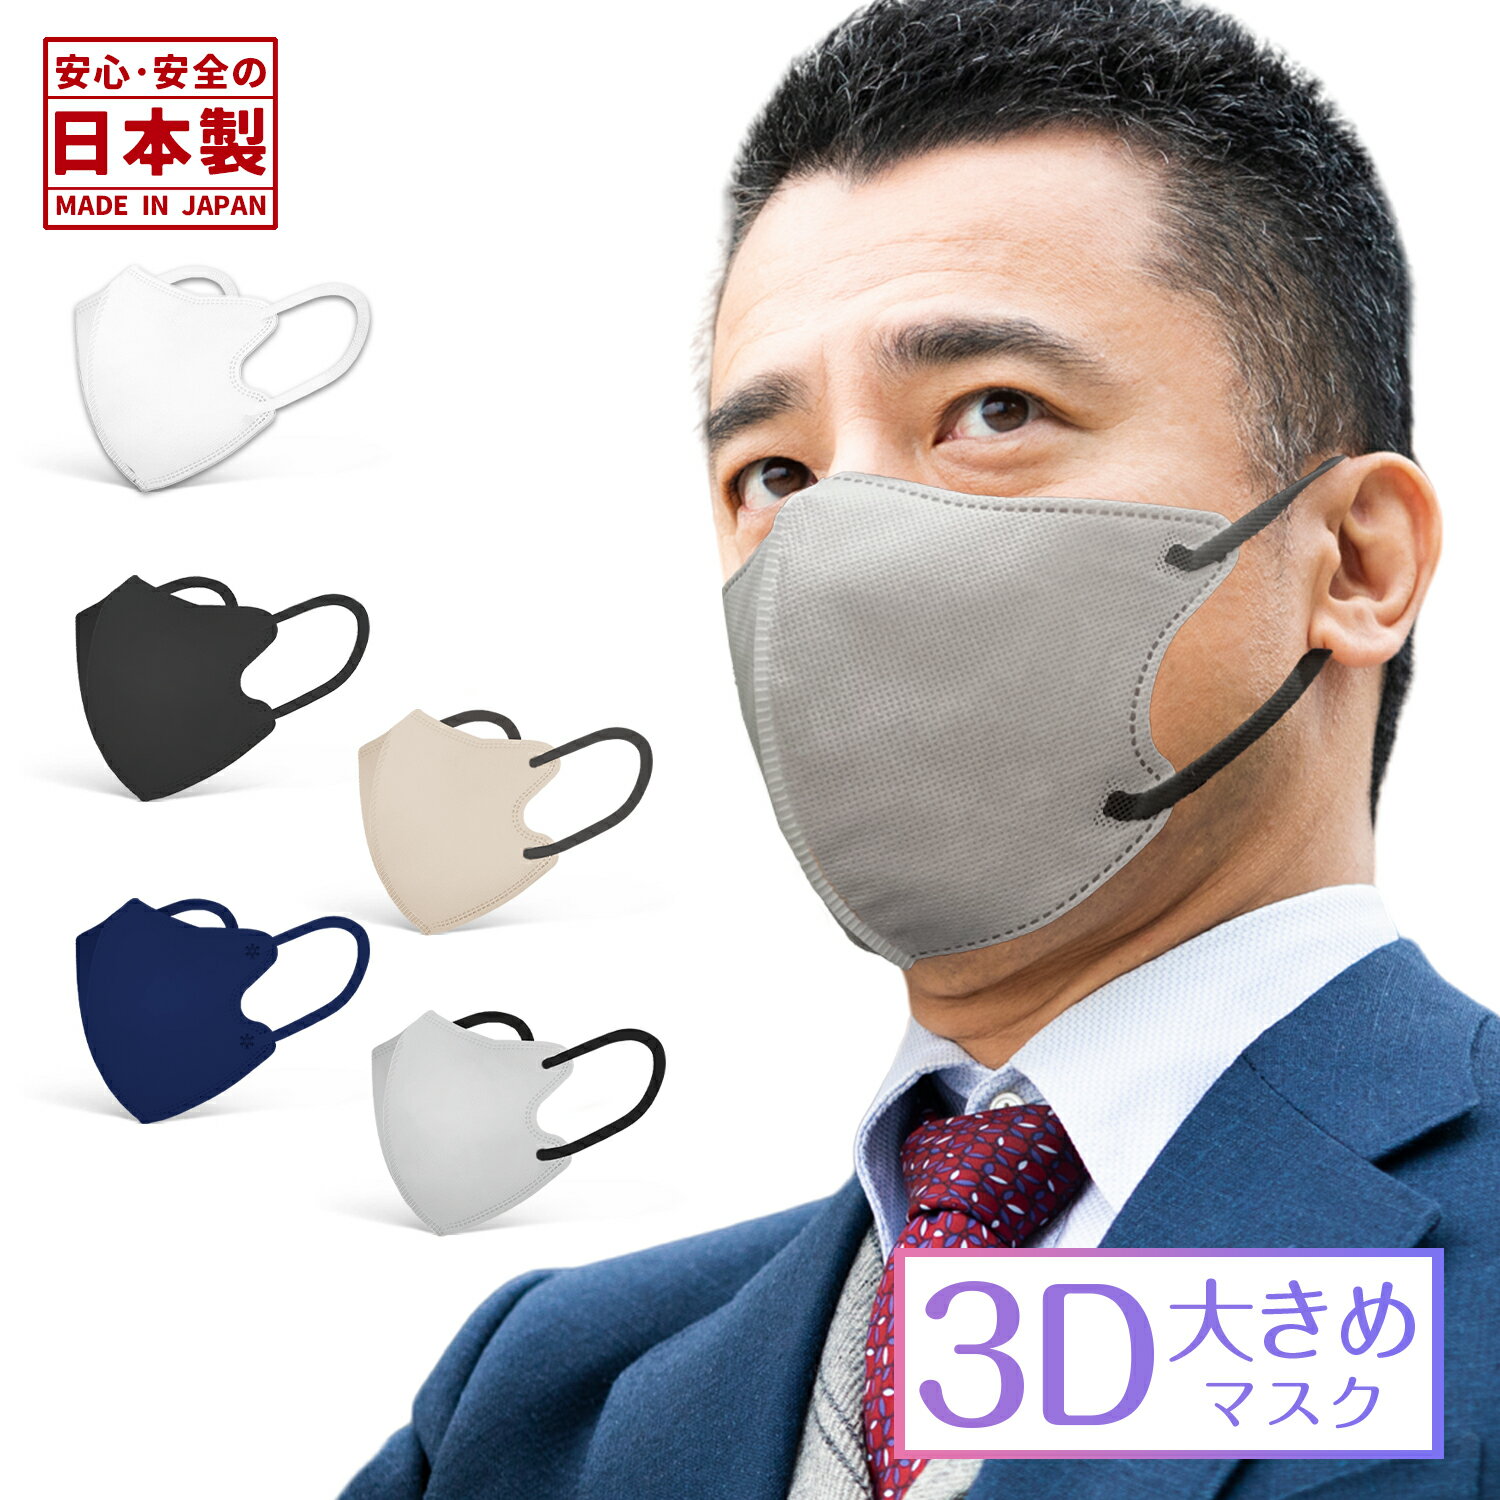 日本製 3Dマスク 大きめ 30枚 男性 大きい サイズ バ